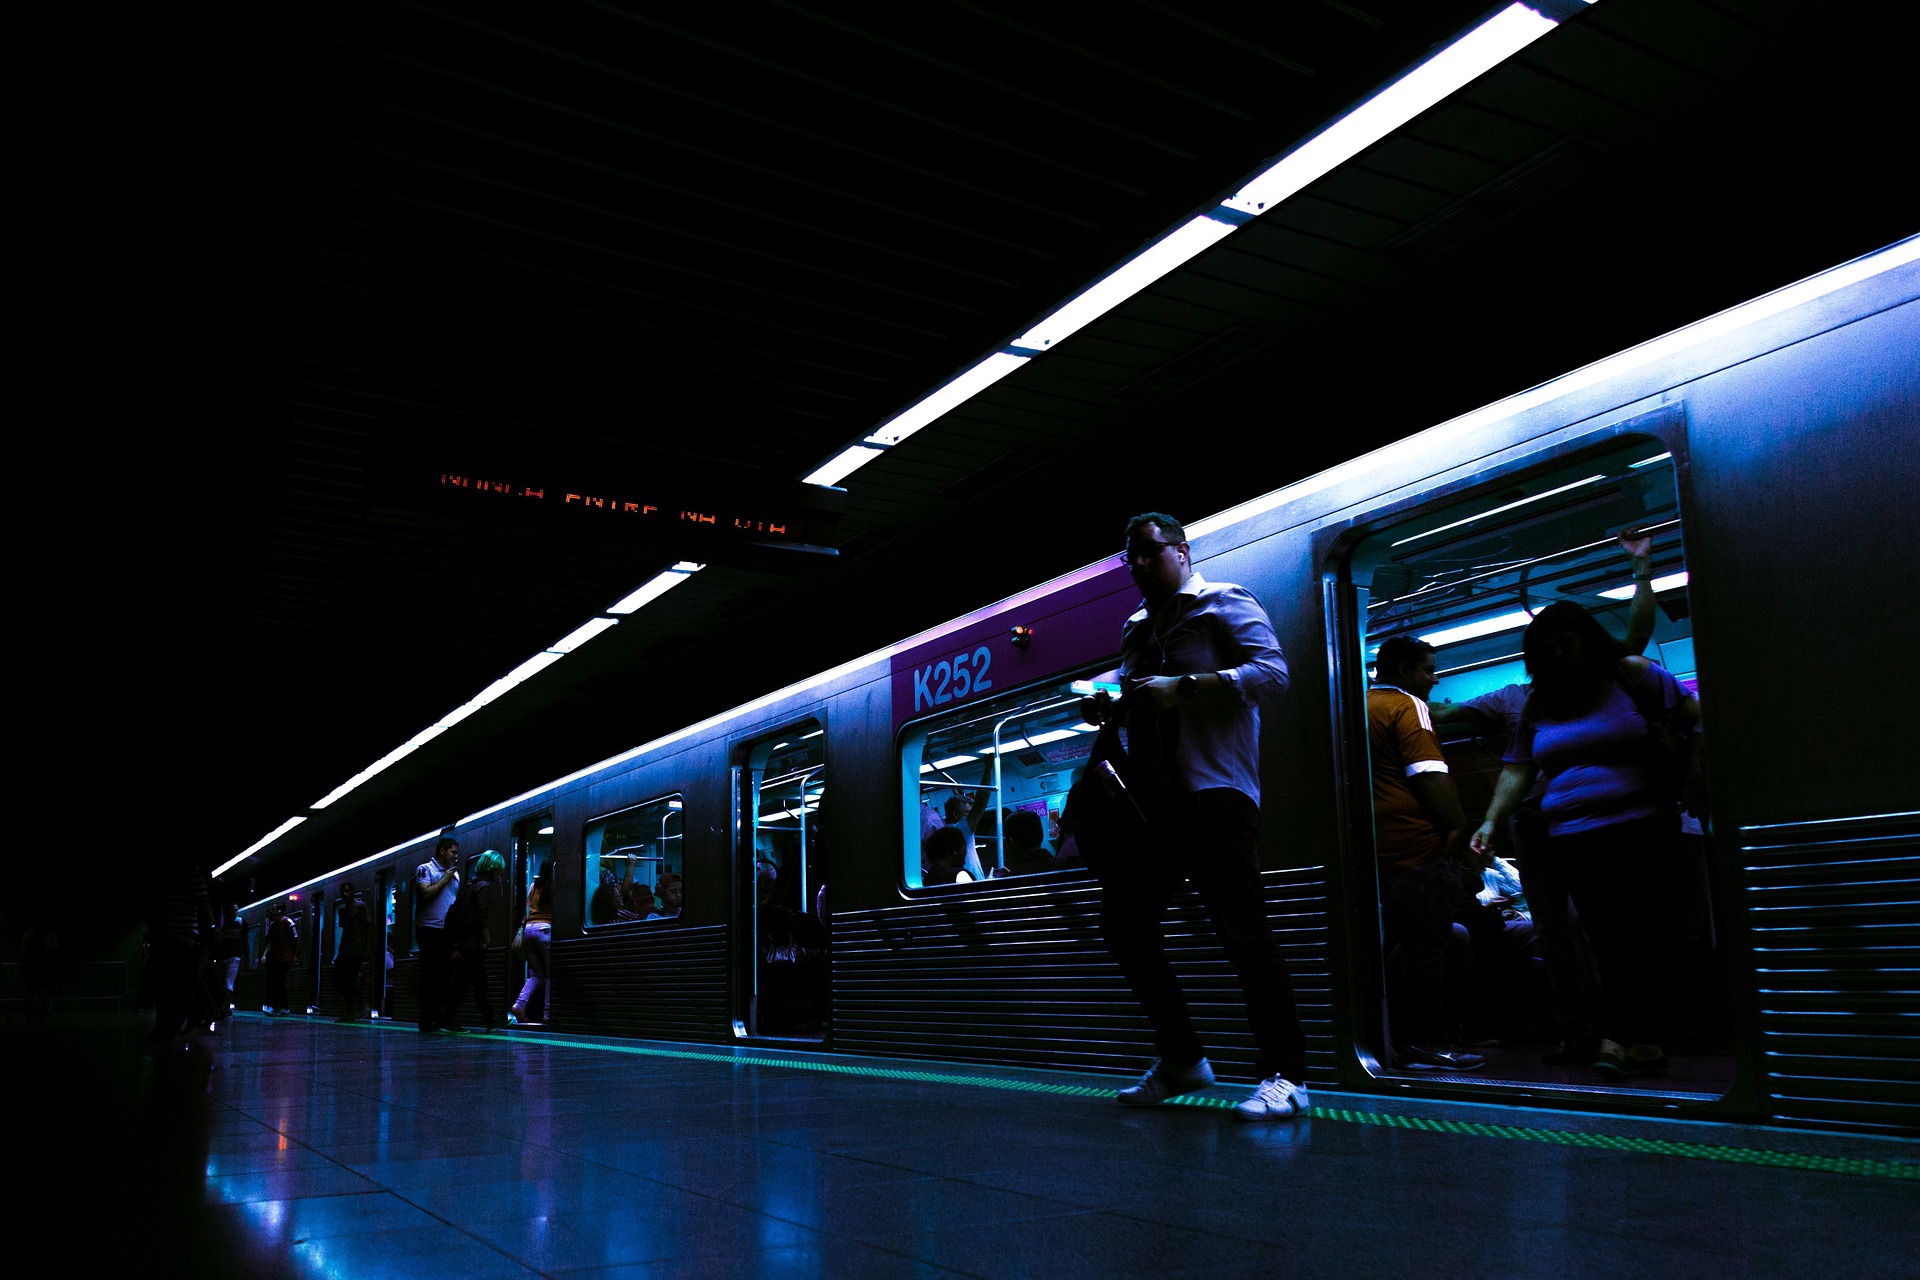 U - Bahnstation Shanghai China